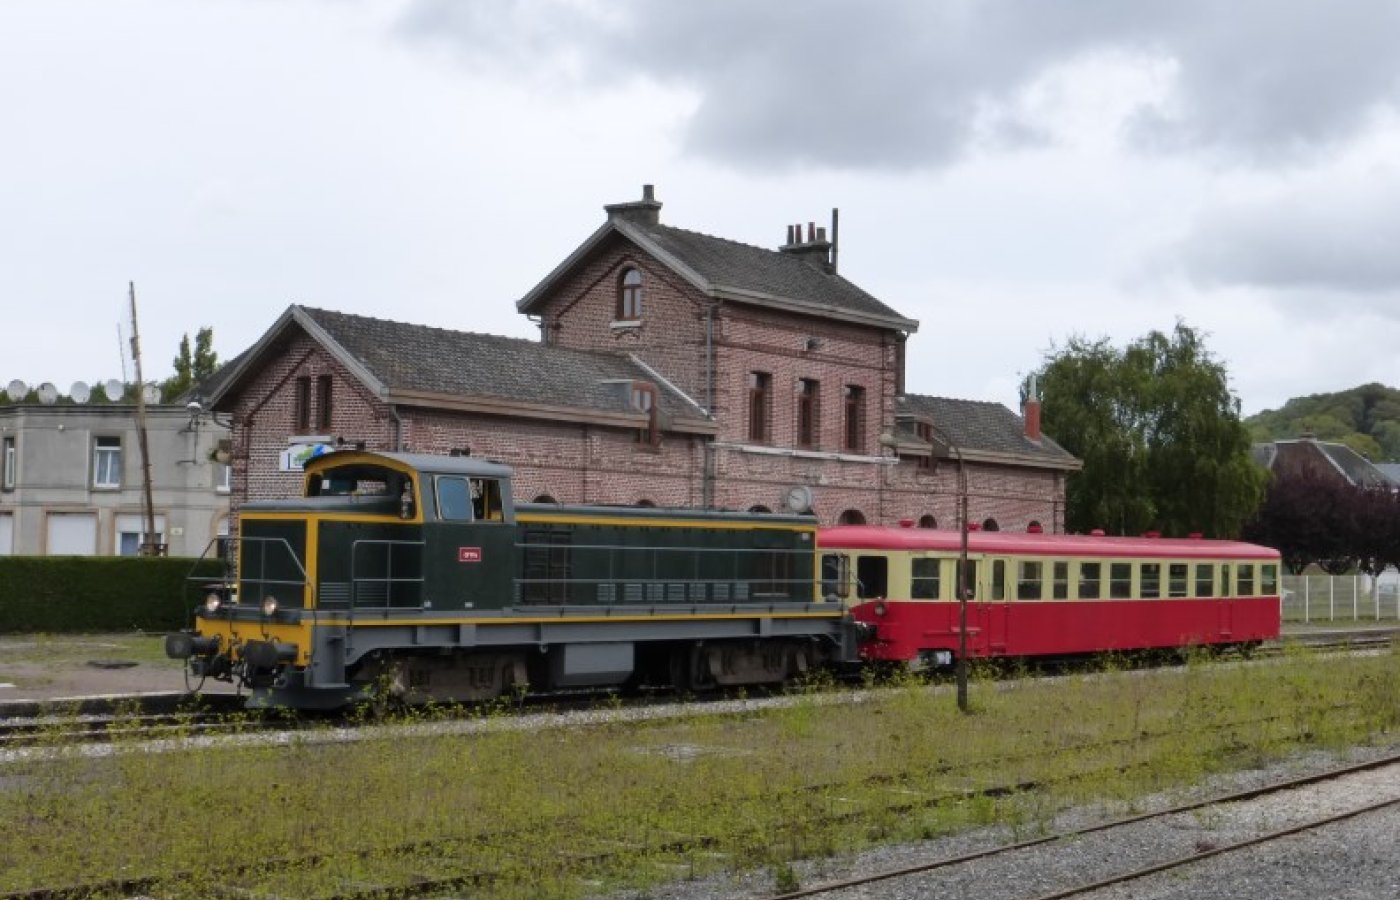 BB 63852 - Locomotive diesel-électrique